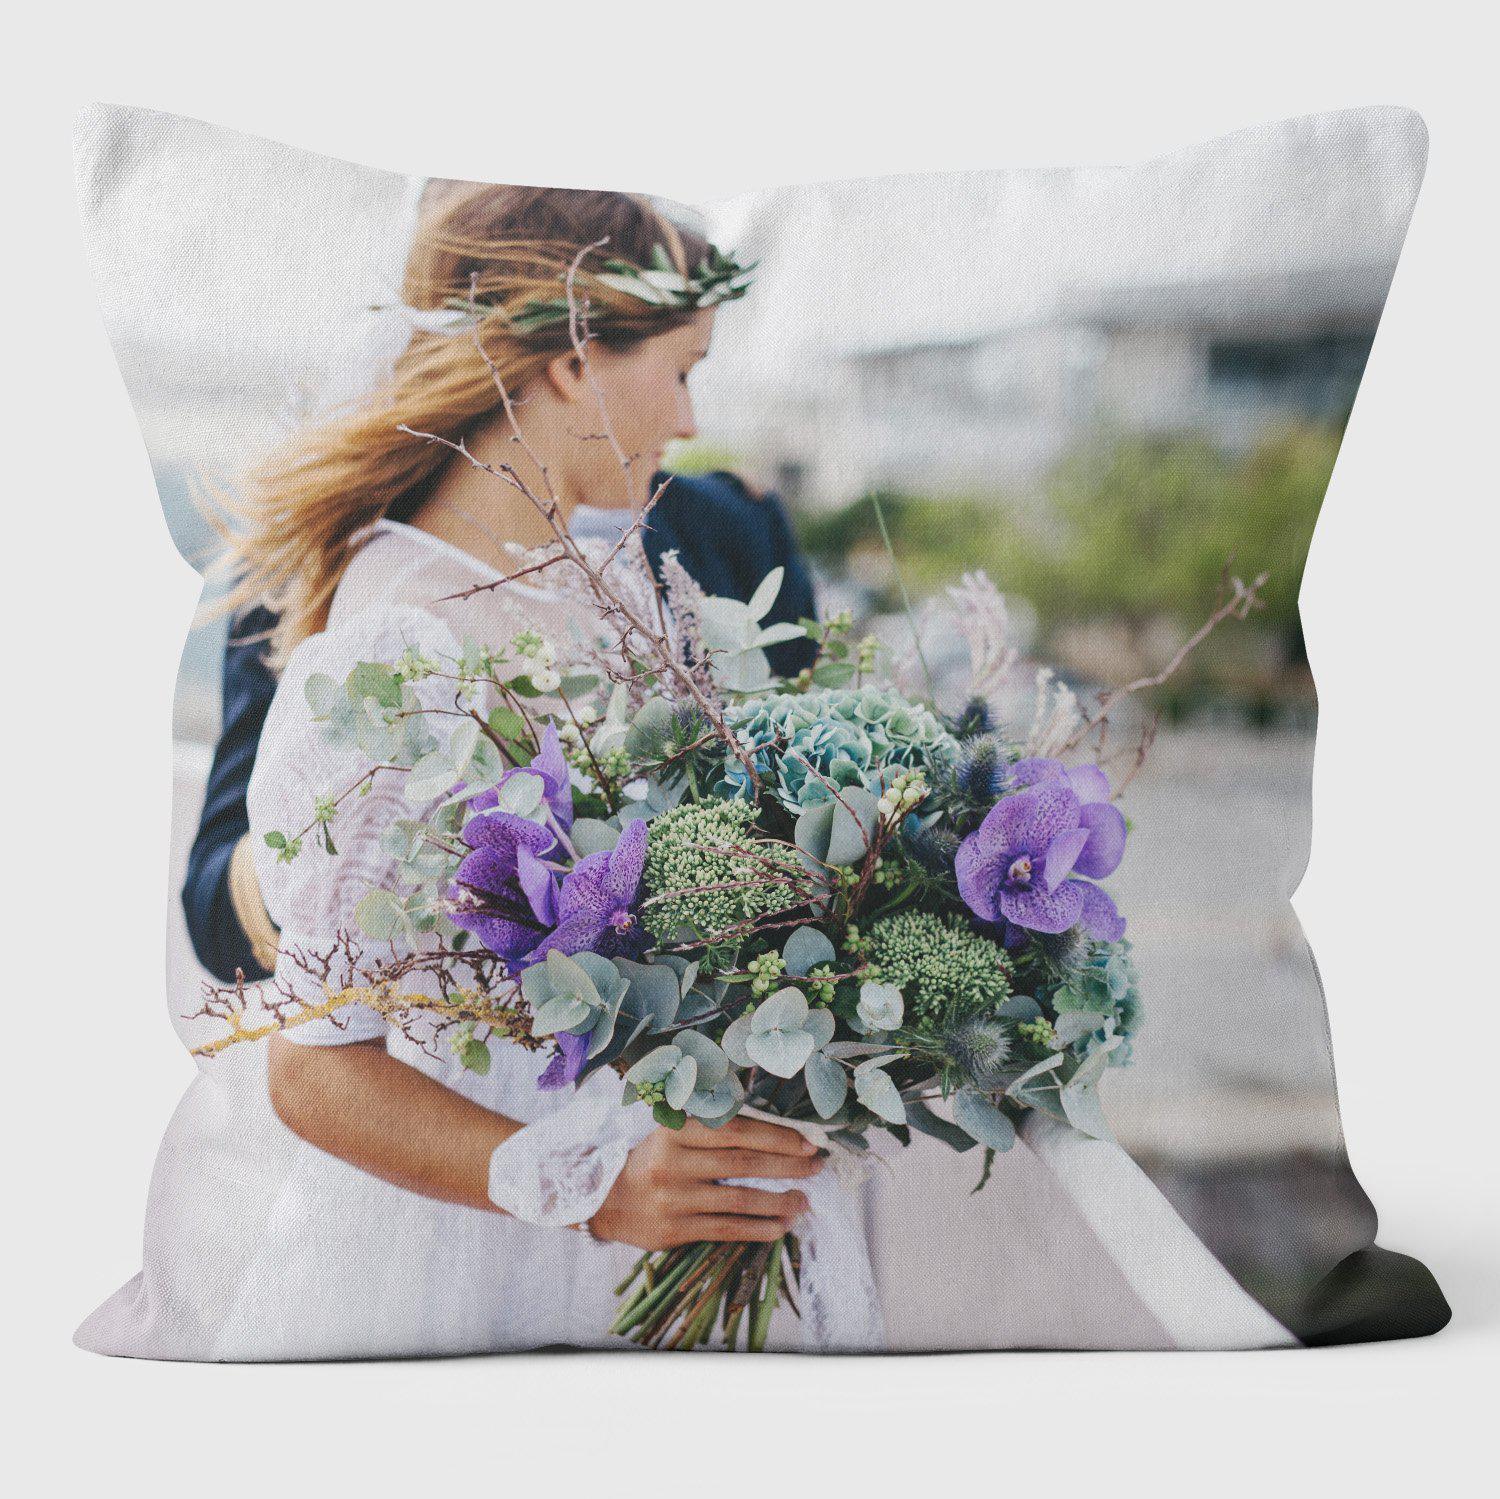 Wedding Cushions - Single Image Photo Cushion Bespoke Layout Service - Luxury Photo Gift - Handmade Cushions UK - WeLoveCushions